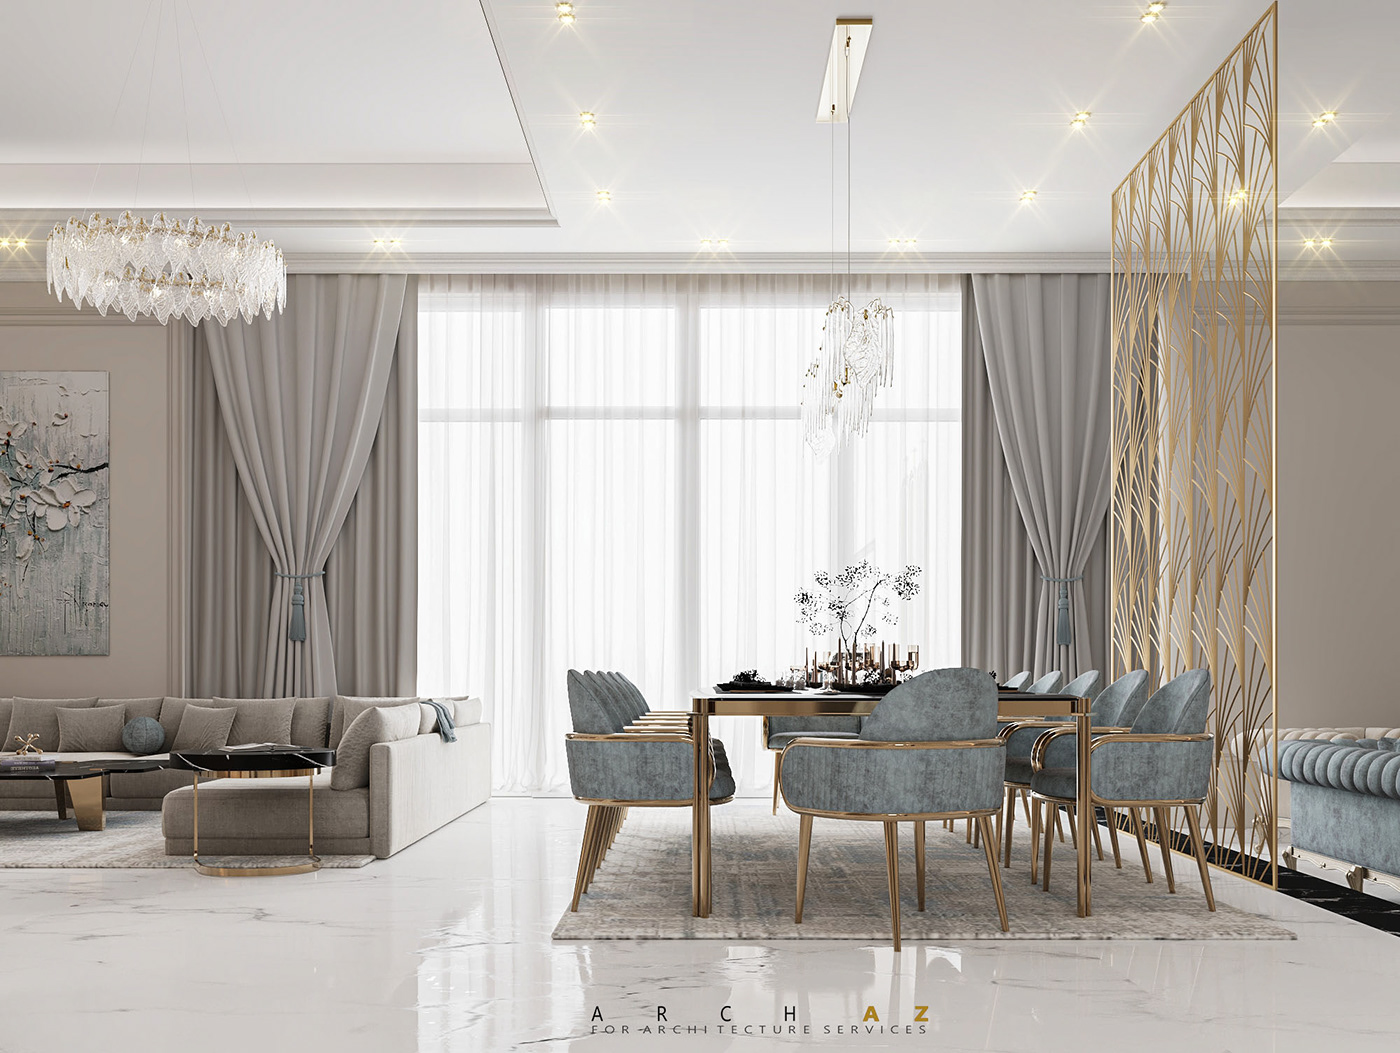 reception dining kitchen interior design  architecture visualization neoclassic luxury Villa classic interior design